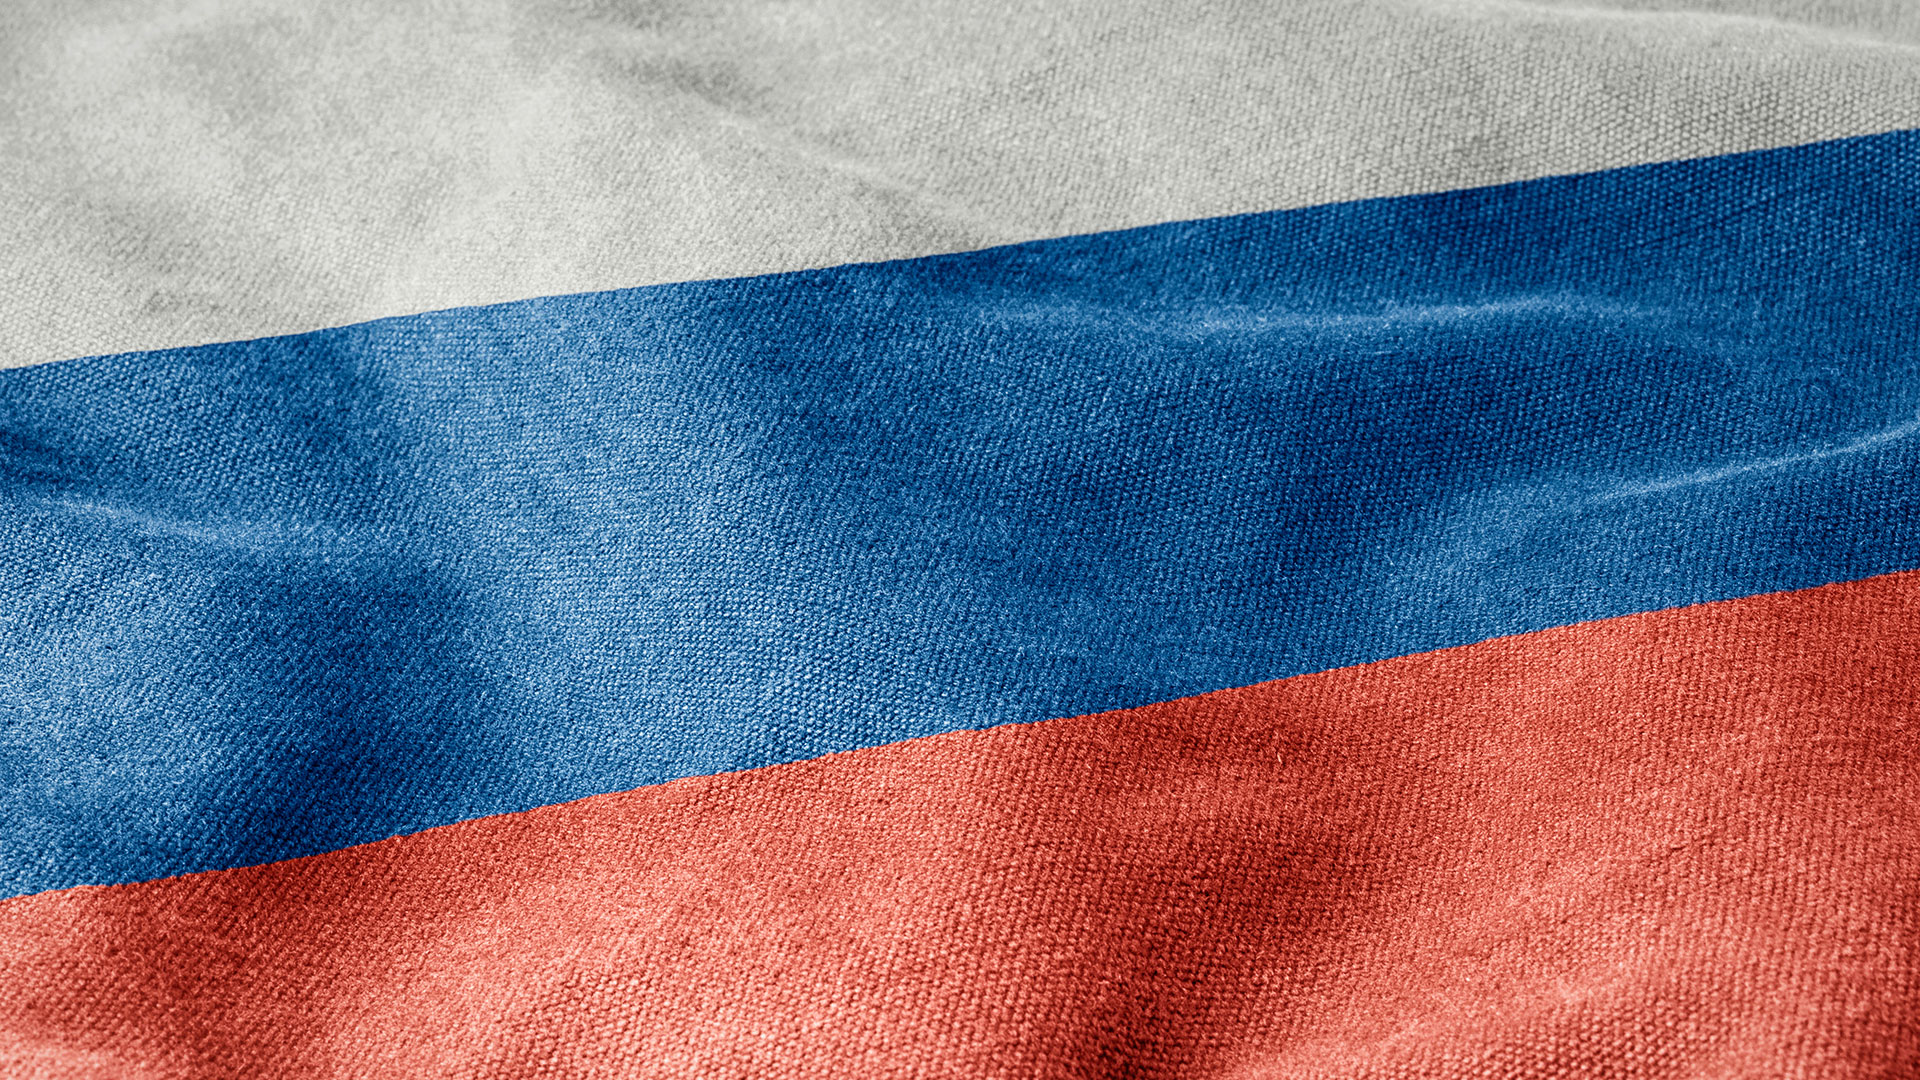 Rosja chce, żeby Google nie powiadamiał o protestach w Moskwie